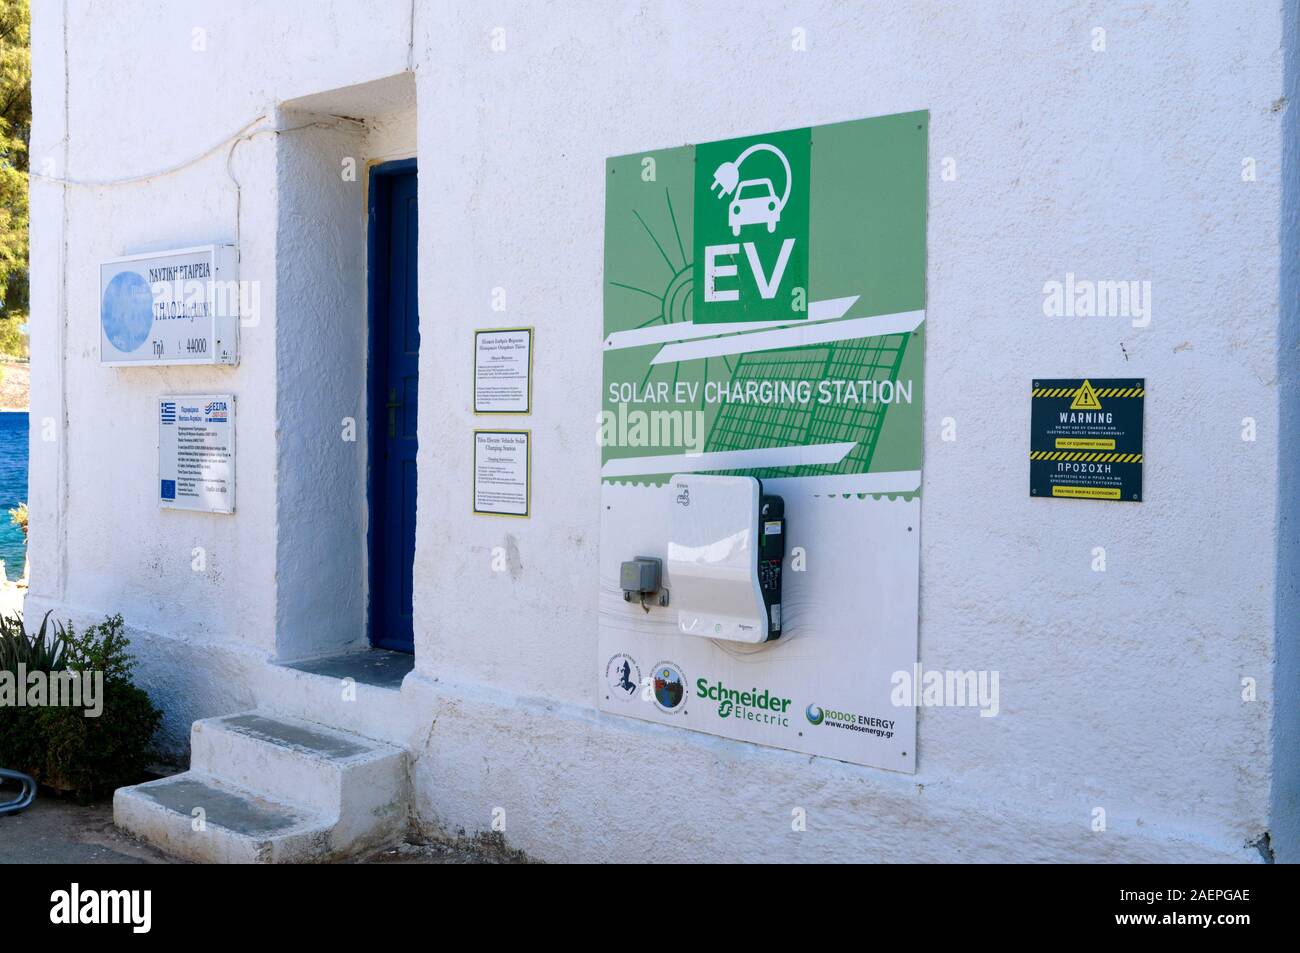 Station de charge de voiture électrique solaire, Livadia, dans le cadre de l'initiative Just Go Zero Tilos, Tilos, îles Dodécanèse, sud de la mer Égée, Grèce. Banque D'Images